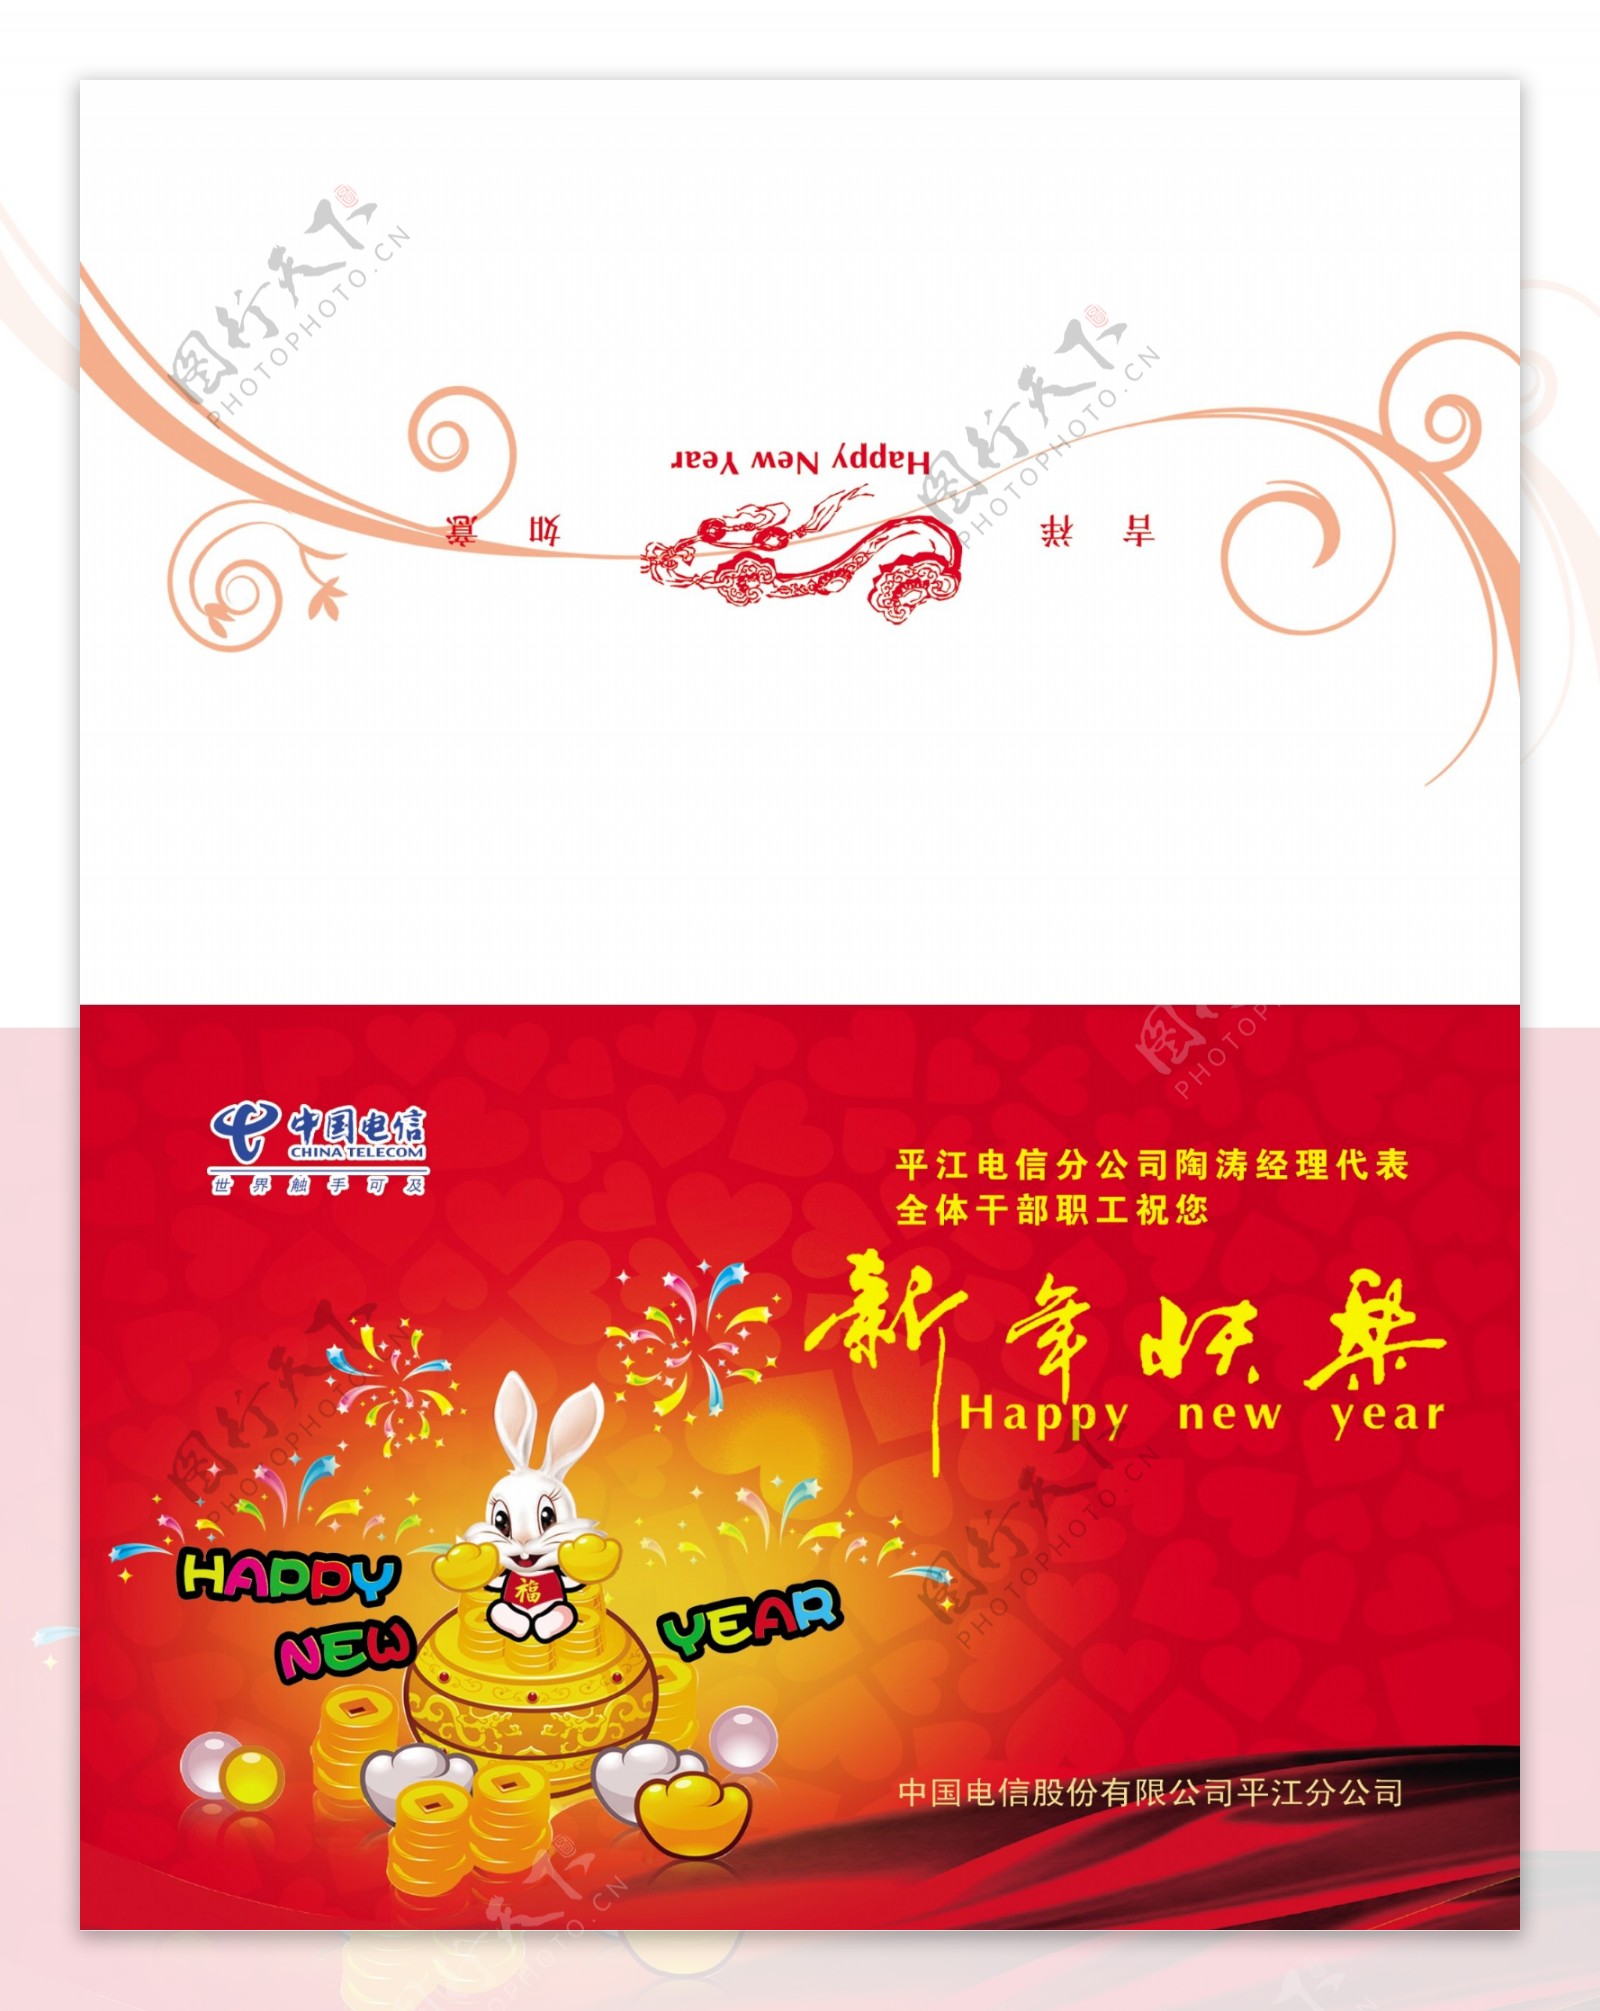 中国电信贺卡图片